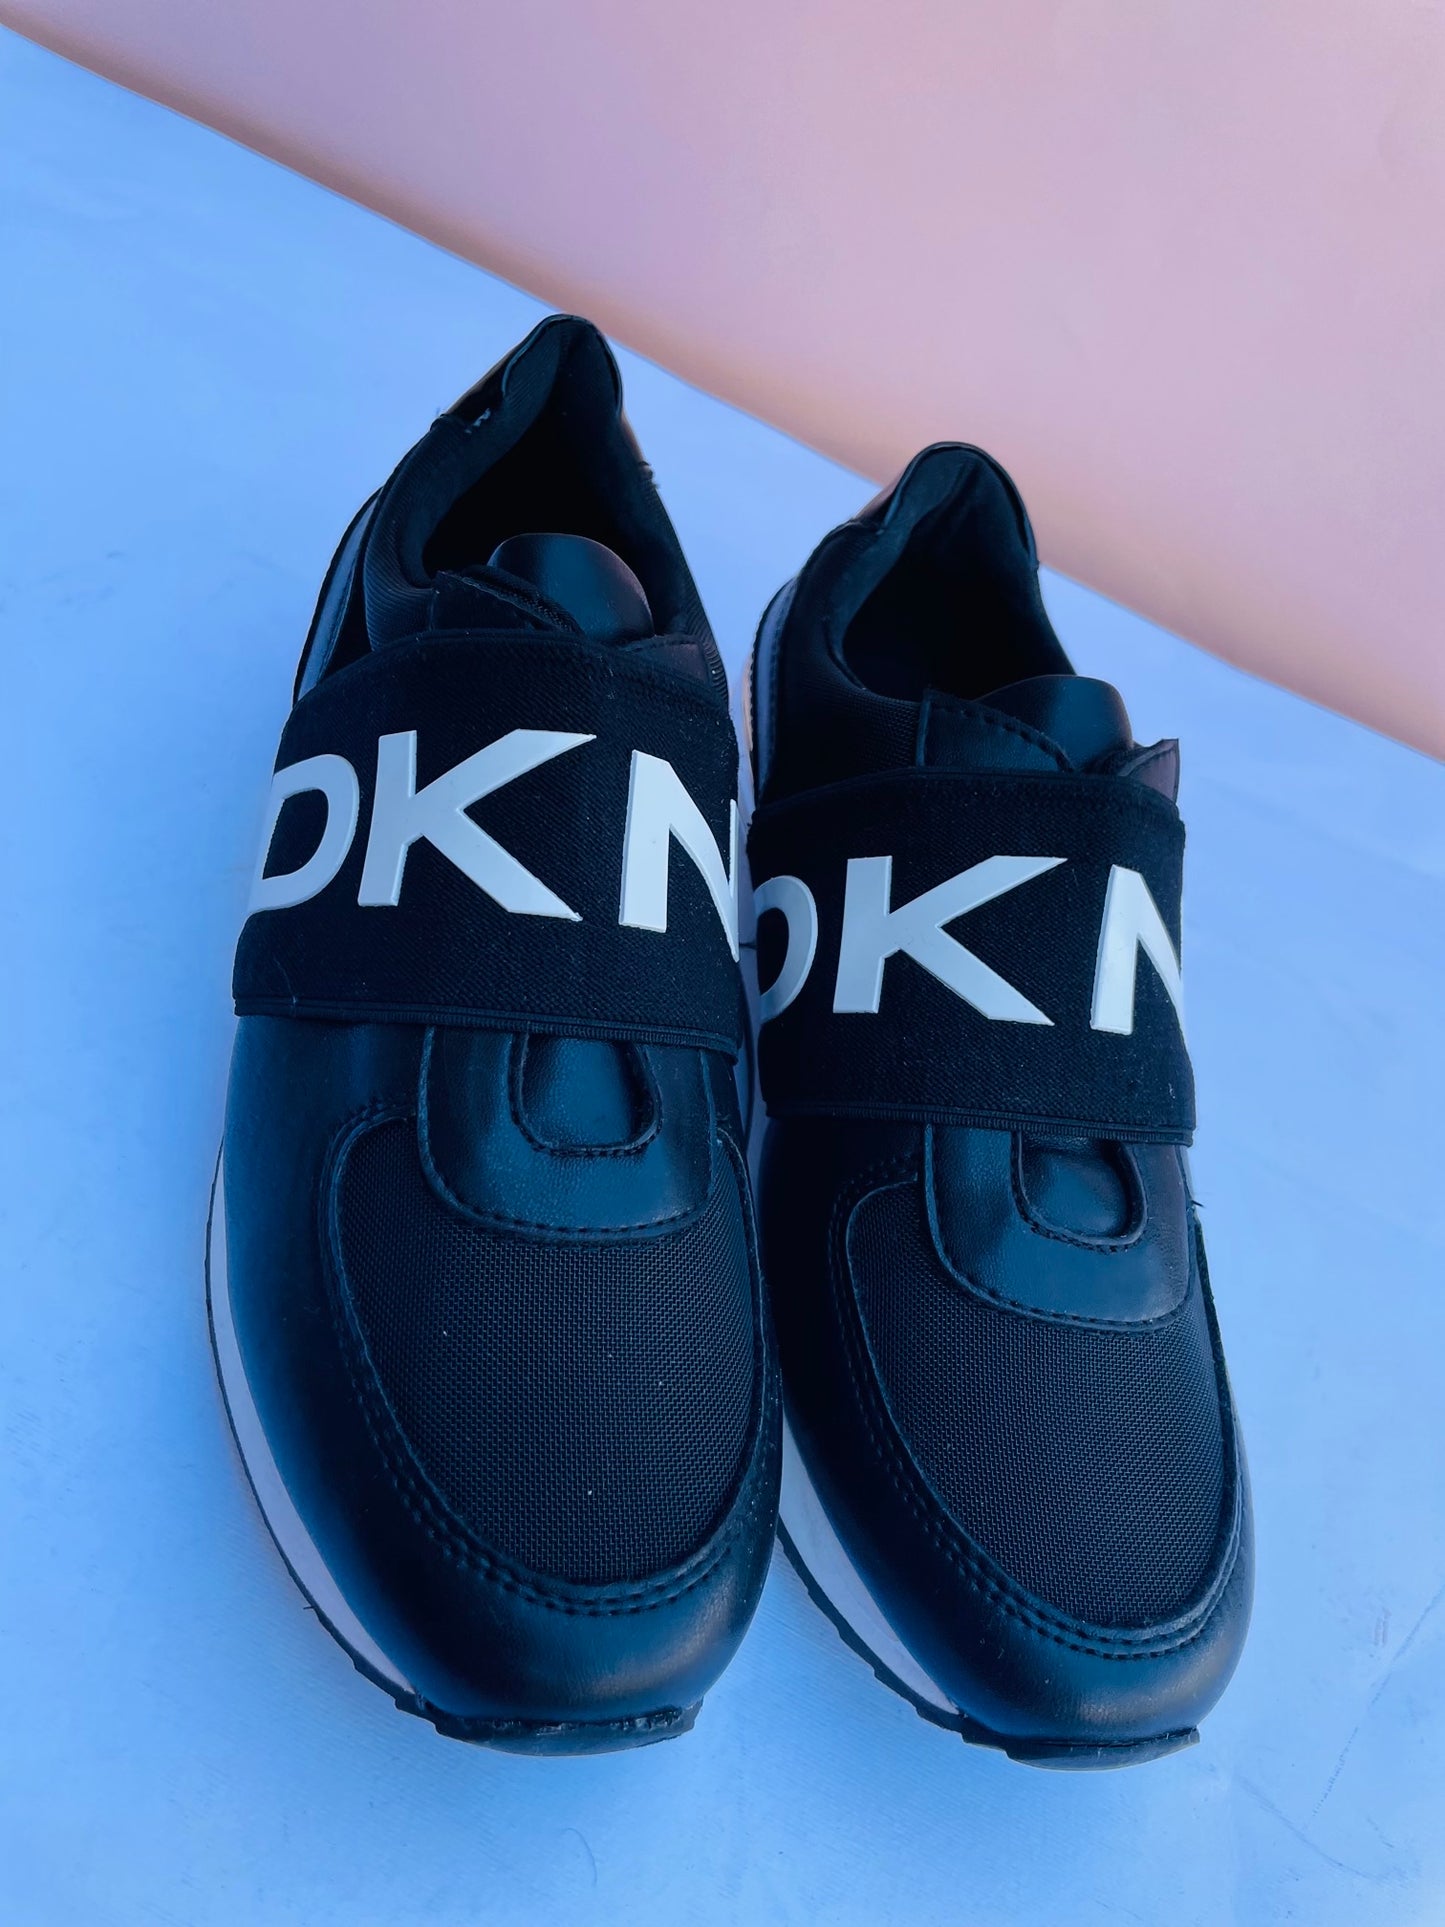 Dkny. Sneakers